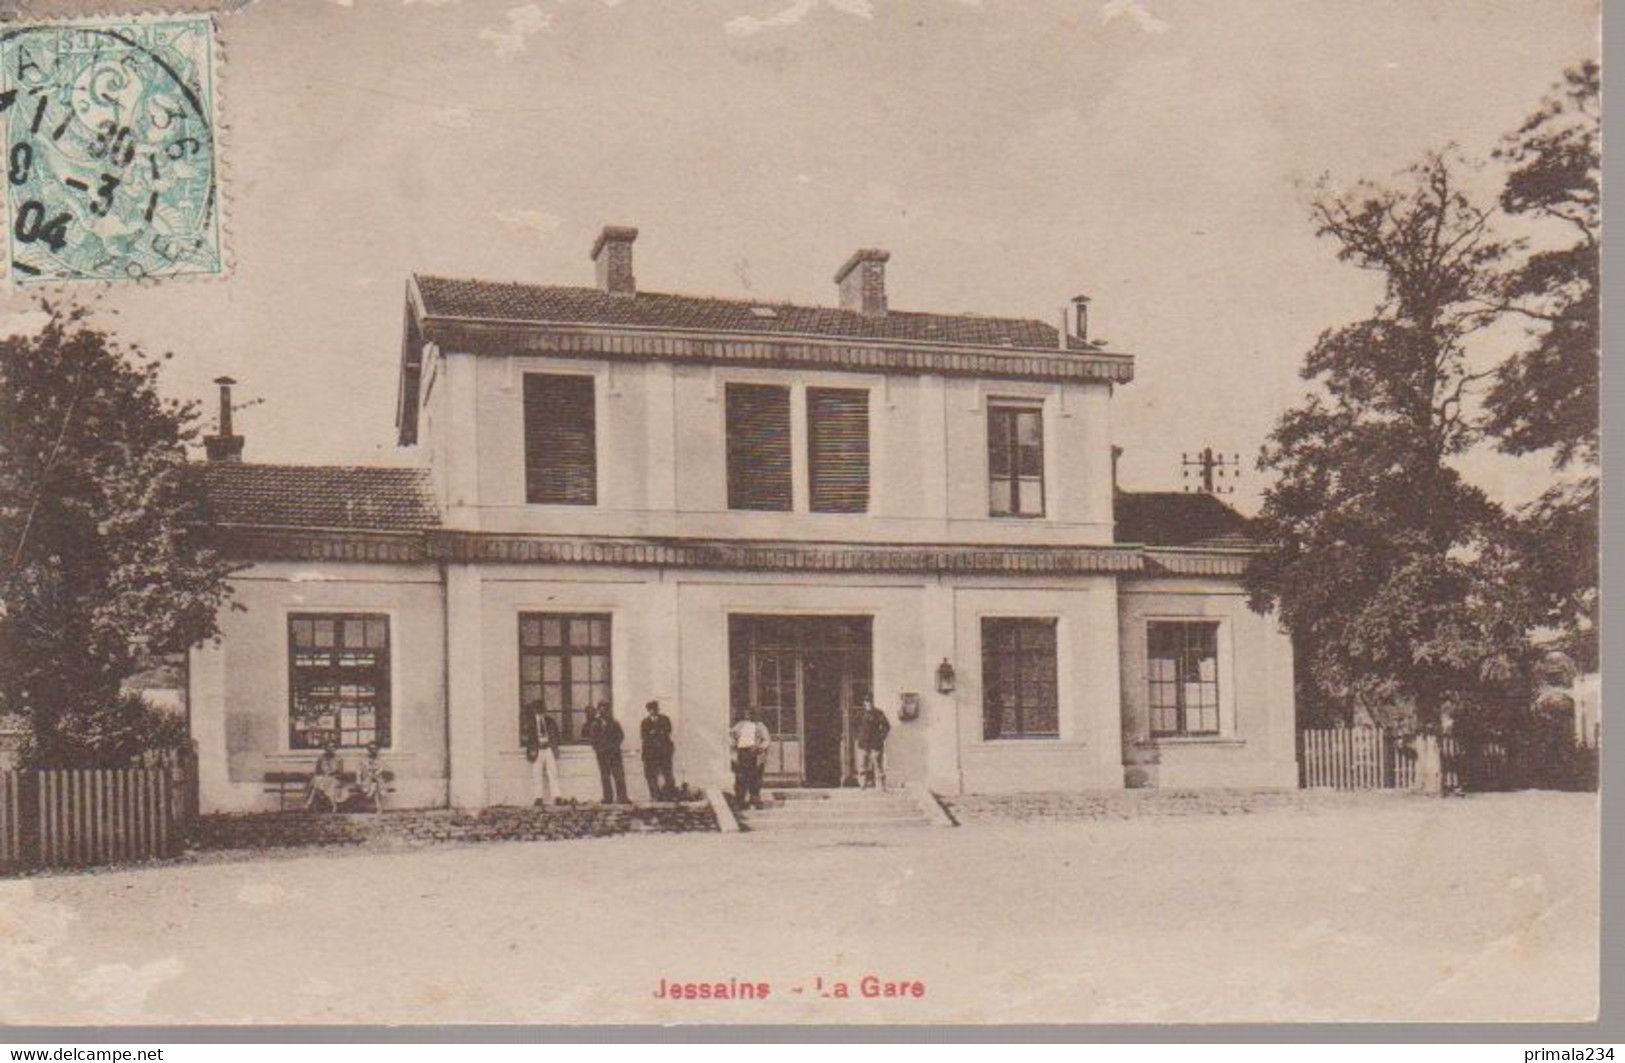 JESSAINS  - LA GARE - Ervy-le-Chatel